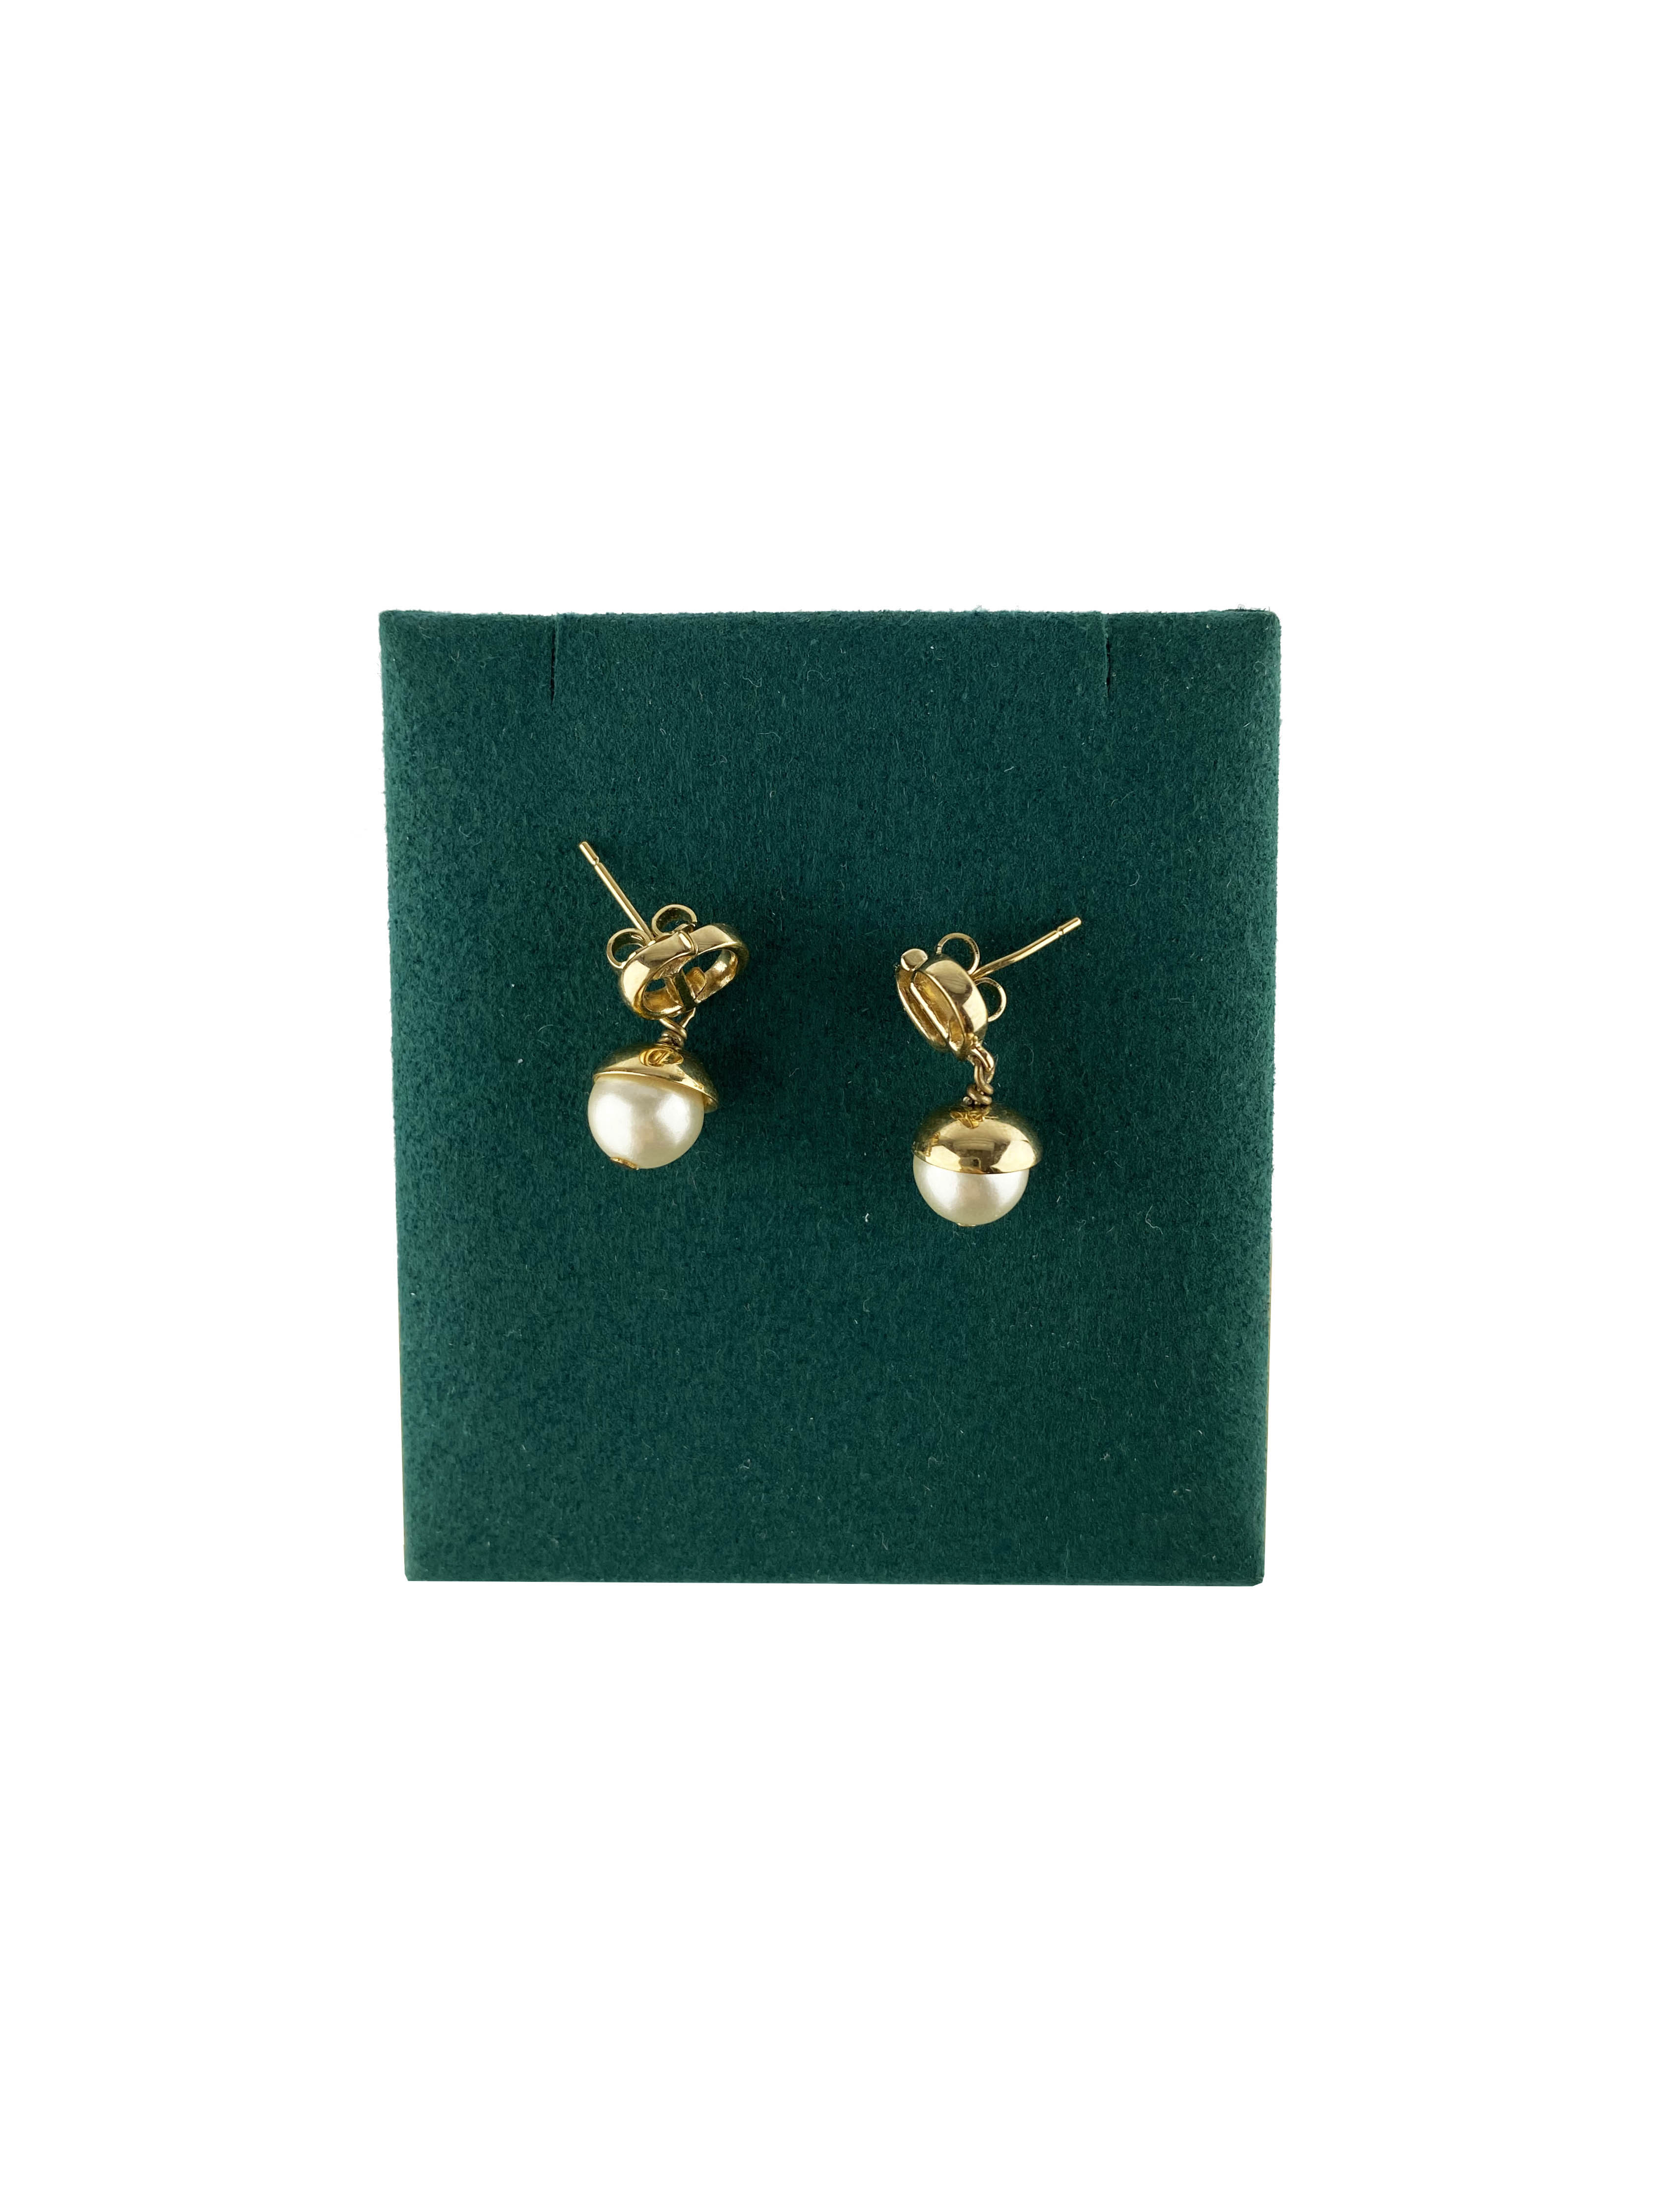 dior-pearl-earrings-1.jpg